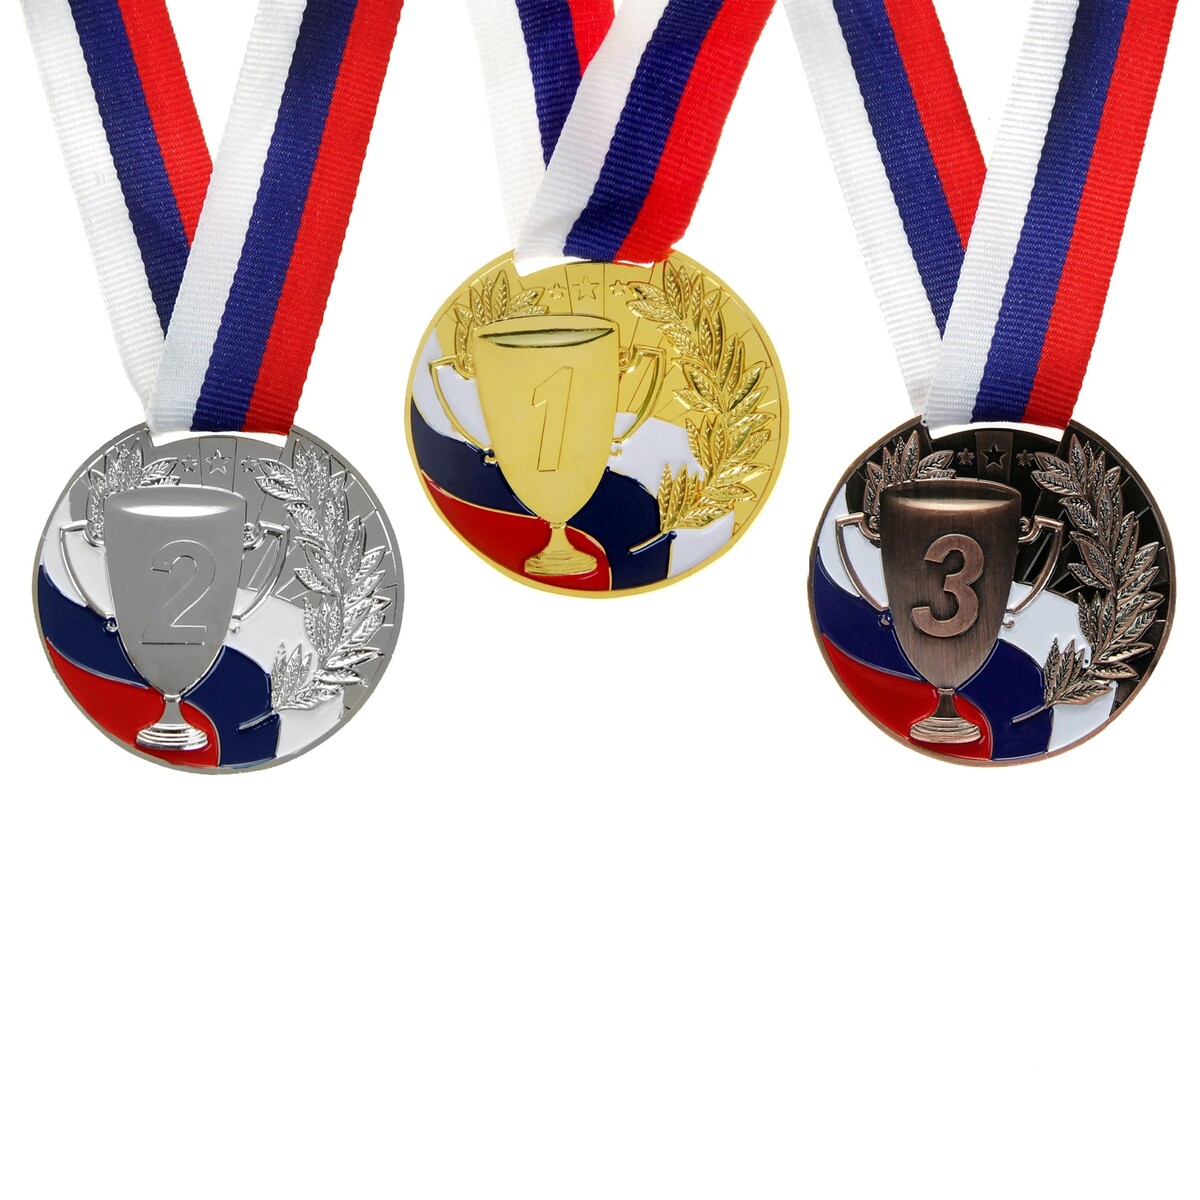 Медаль призовая 013 диам 5 см. 3 место, триколор. цвет бронз. с лентой медаль призовая 193 диам 3 5 см 3 место триколор бронз без ленты